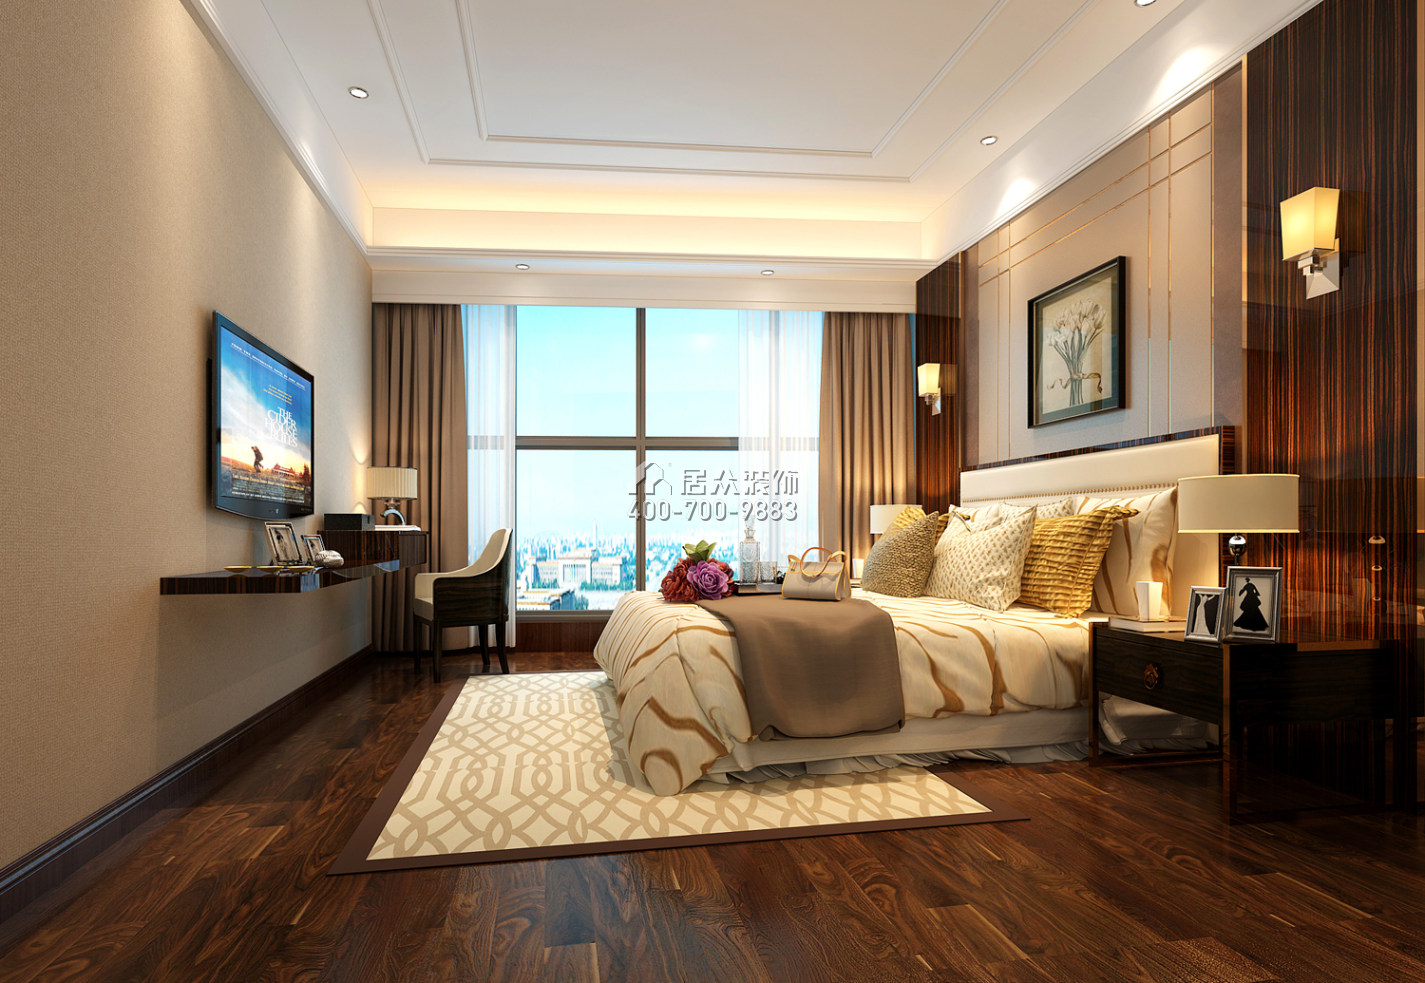 東海國際210平方米其他風格平層戶型臥室裝修效果圖